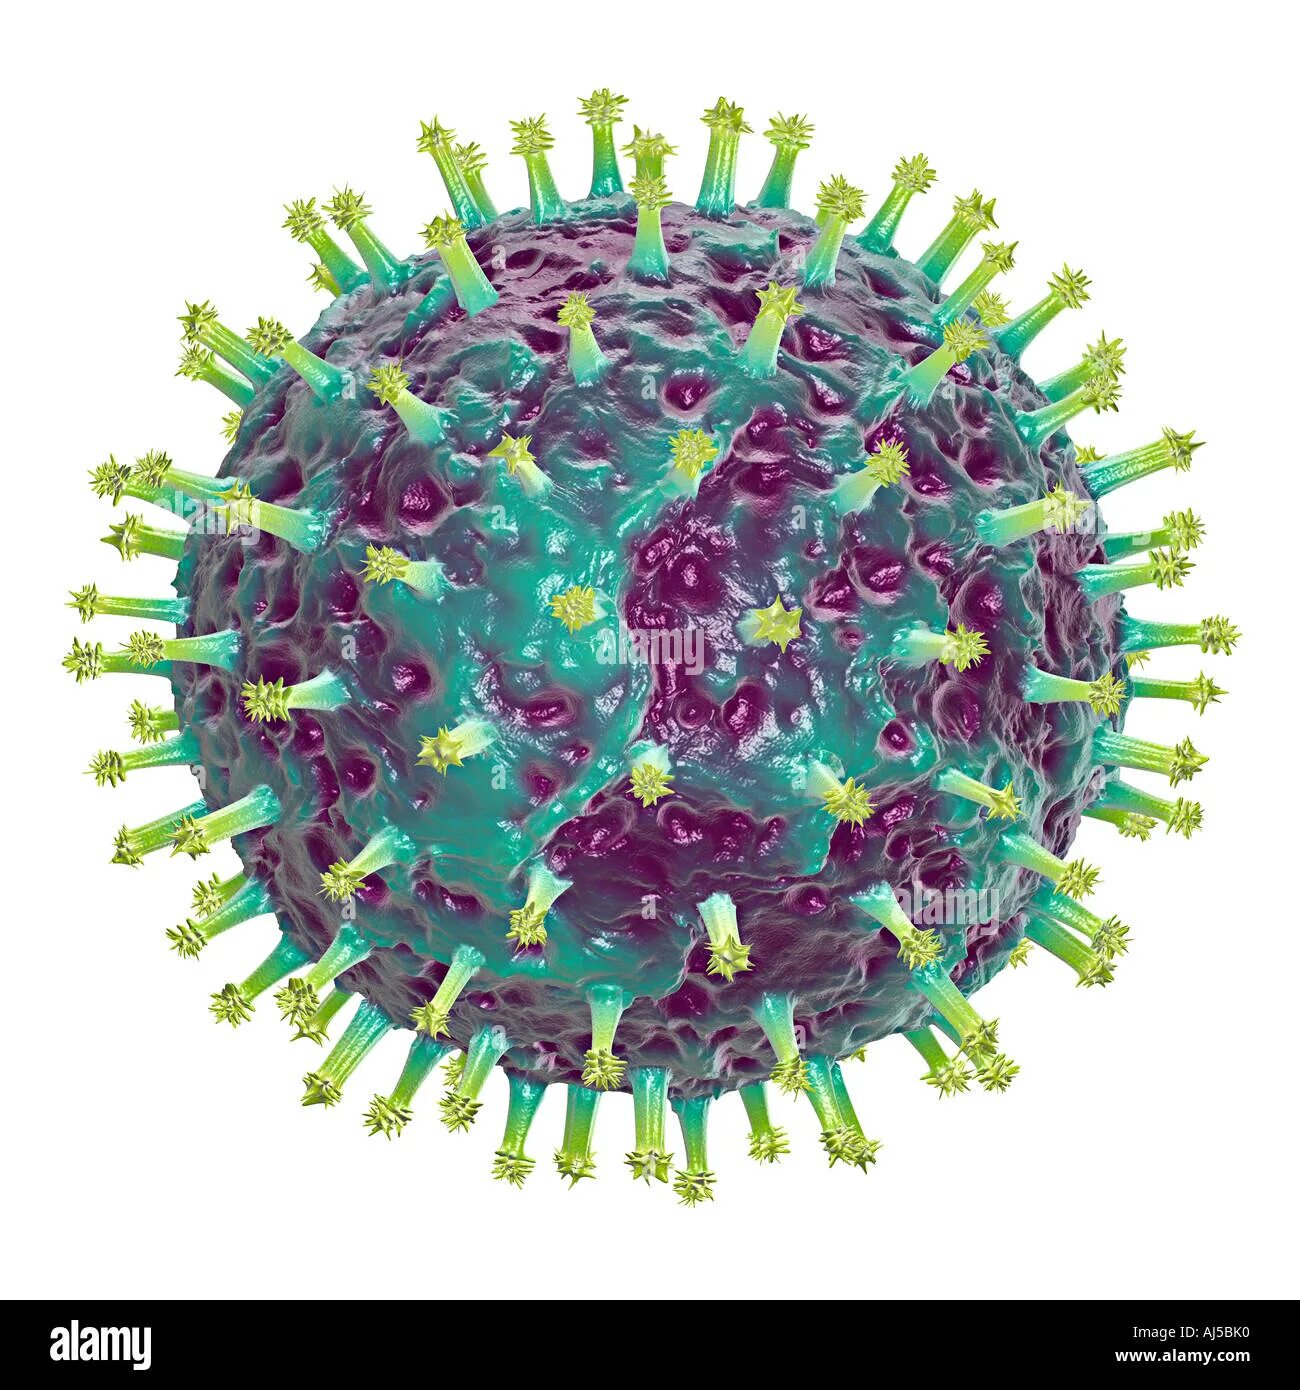 Респираторно-синцитиальный вирус человека. Респираторно- синцитиальный вирус резистентность. Вирус гриппа. Изображение вируса гриппа. Респираторные вирусы гриппа